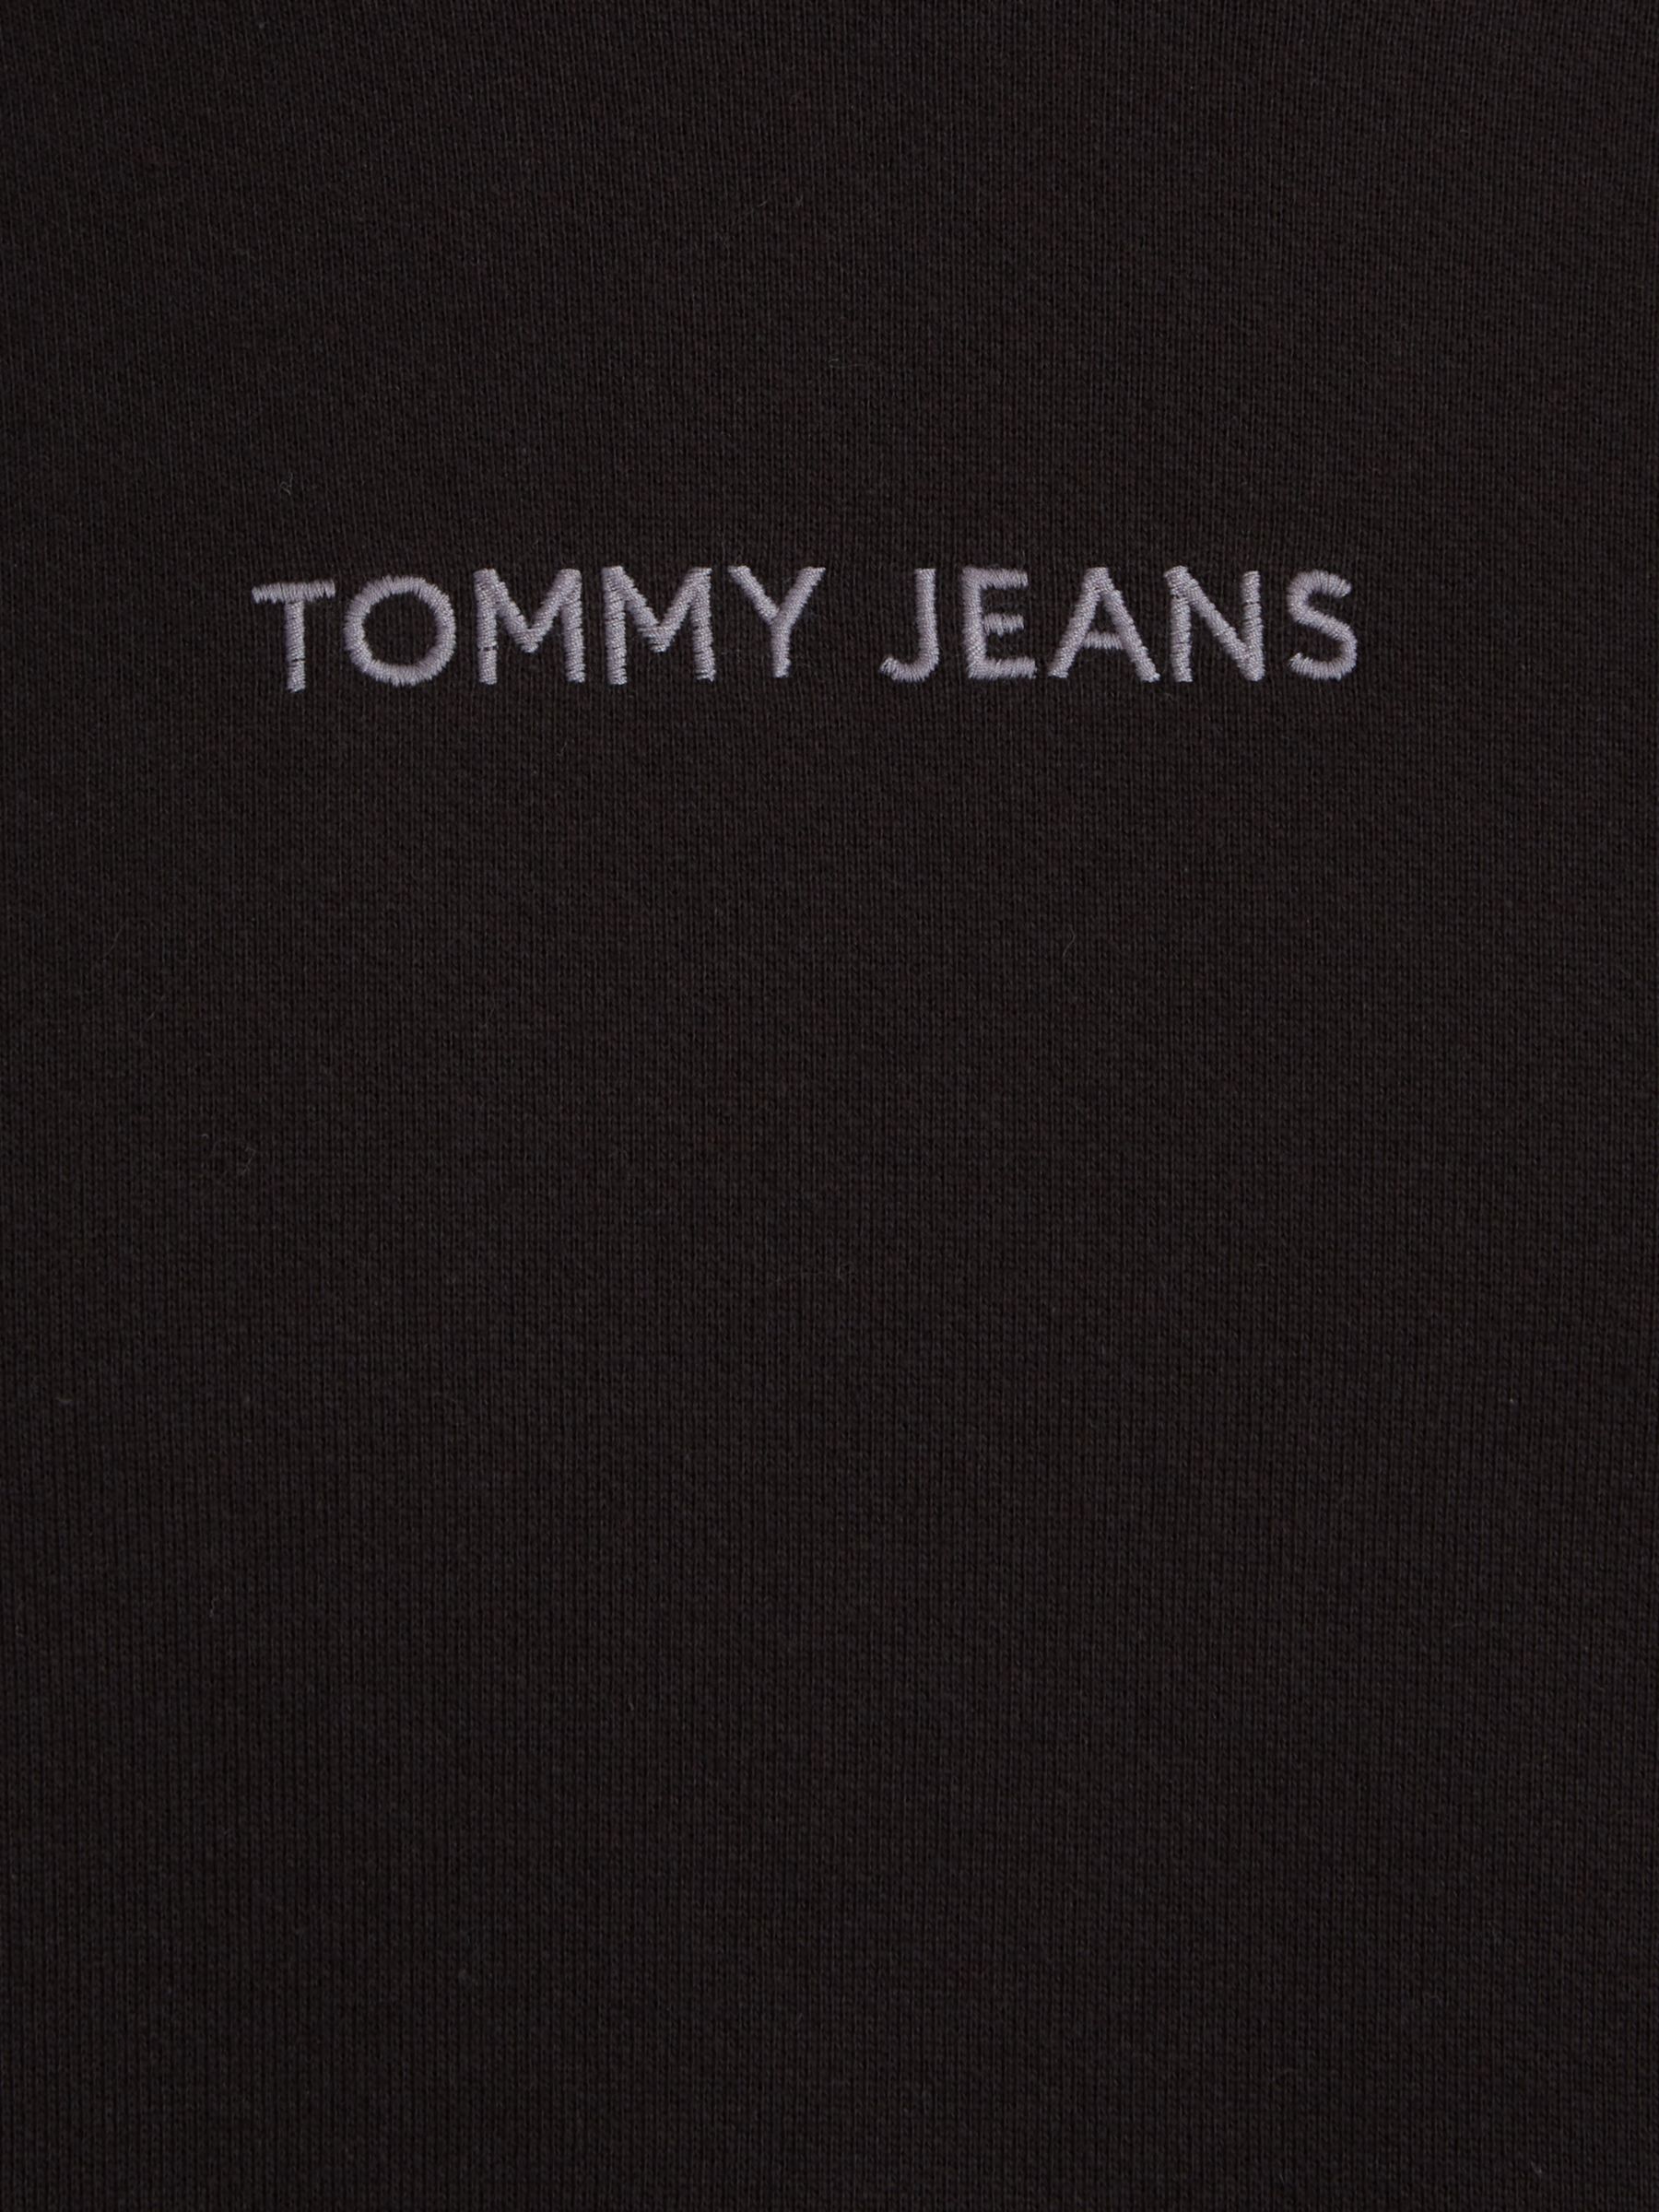 Tommy Jeans Boxy Jumper, Black, XS